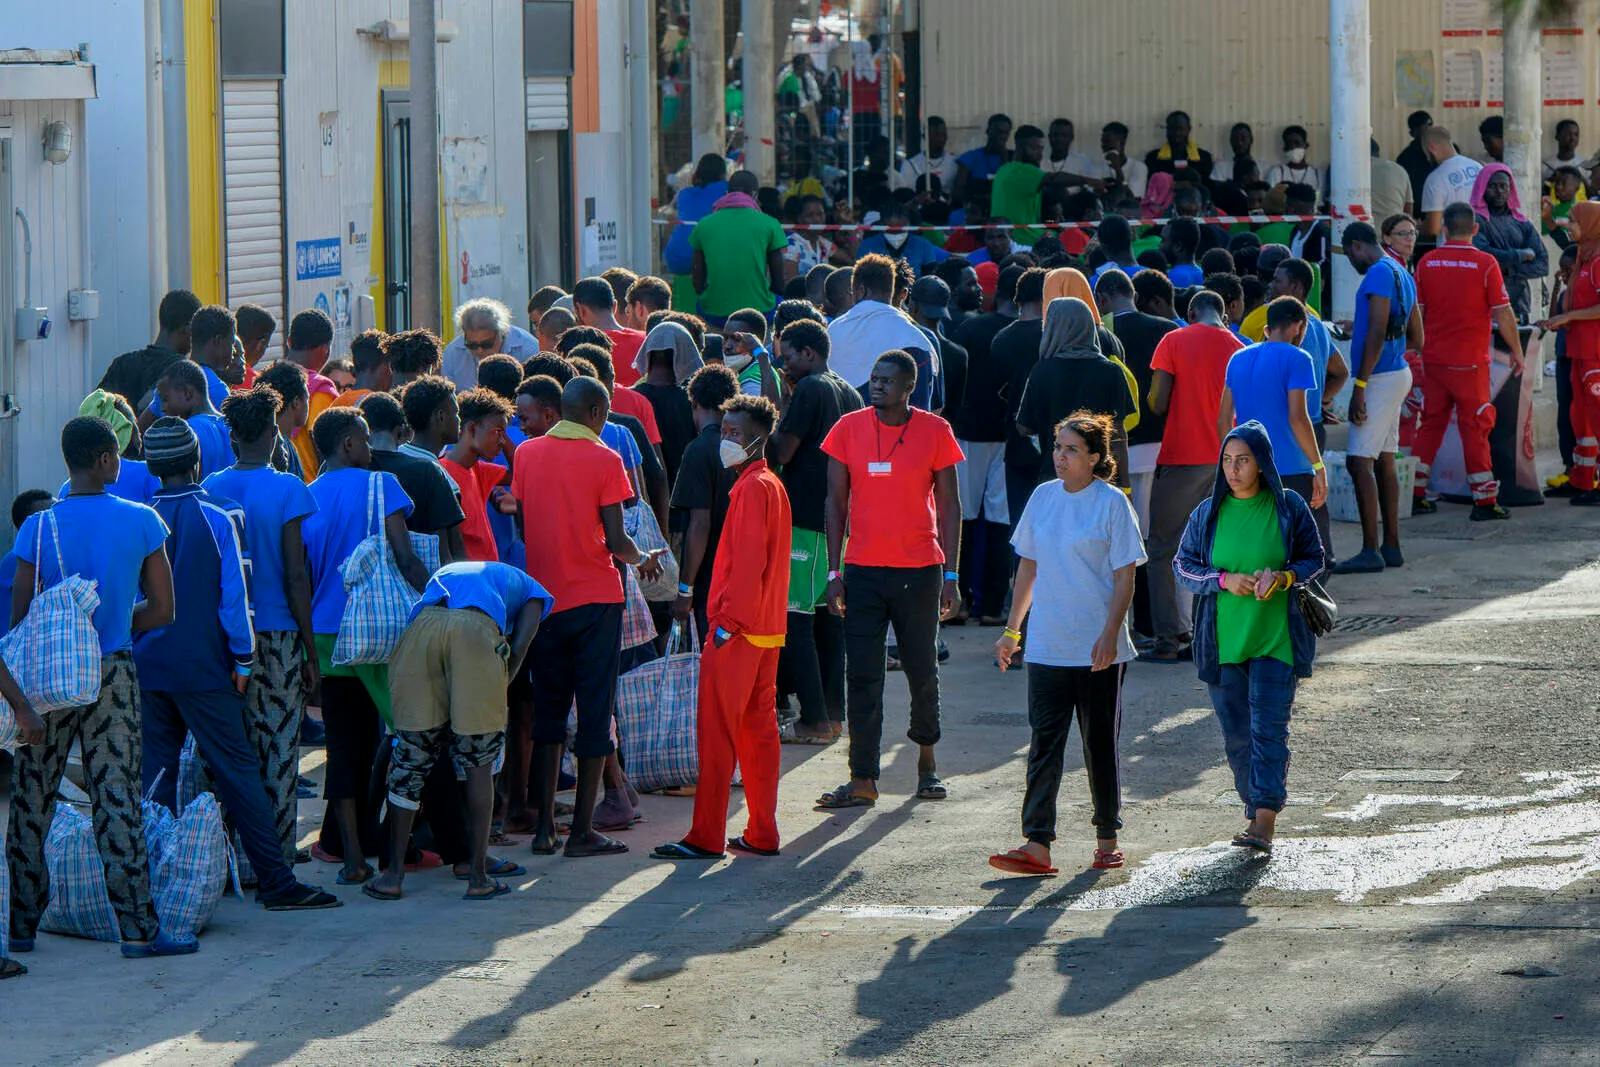 Lage außer Kontrolle: Erneuter Massenansturm auf Lampedusa